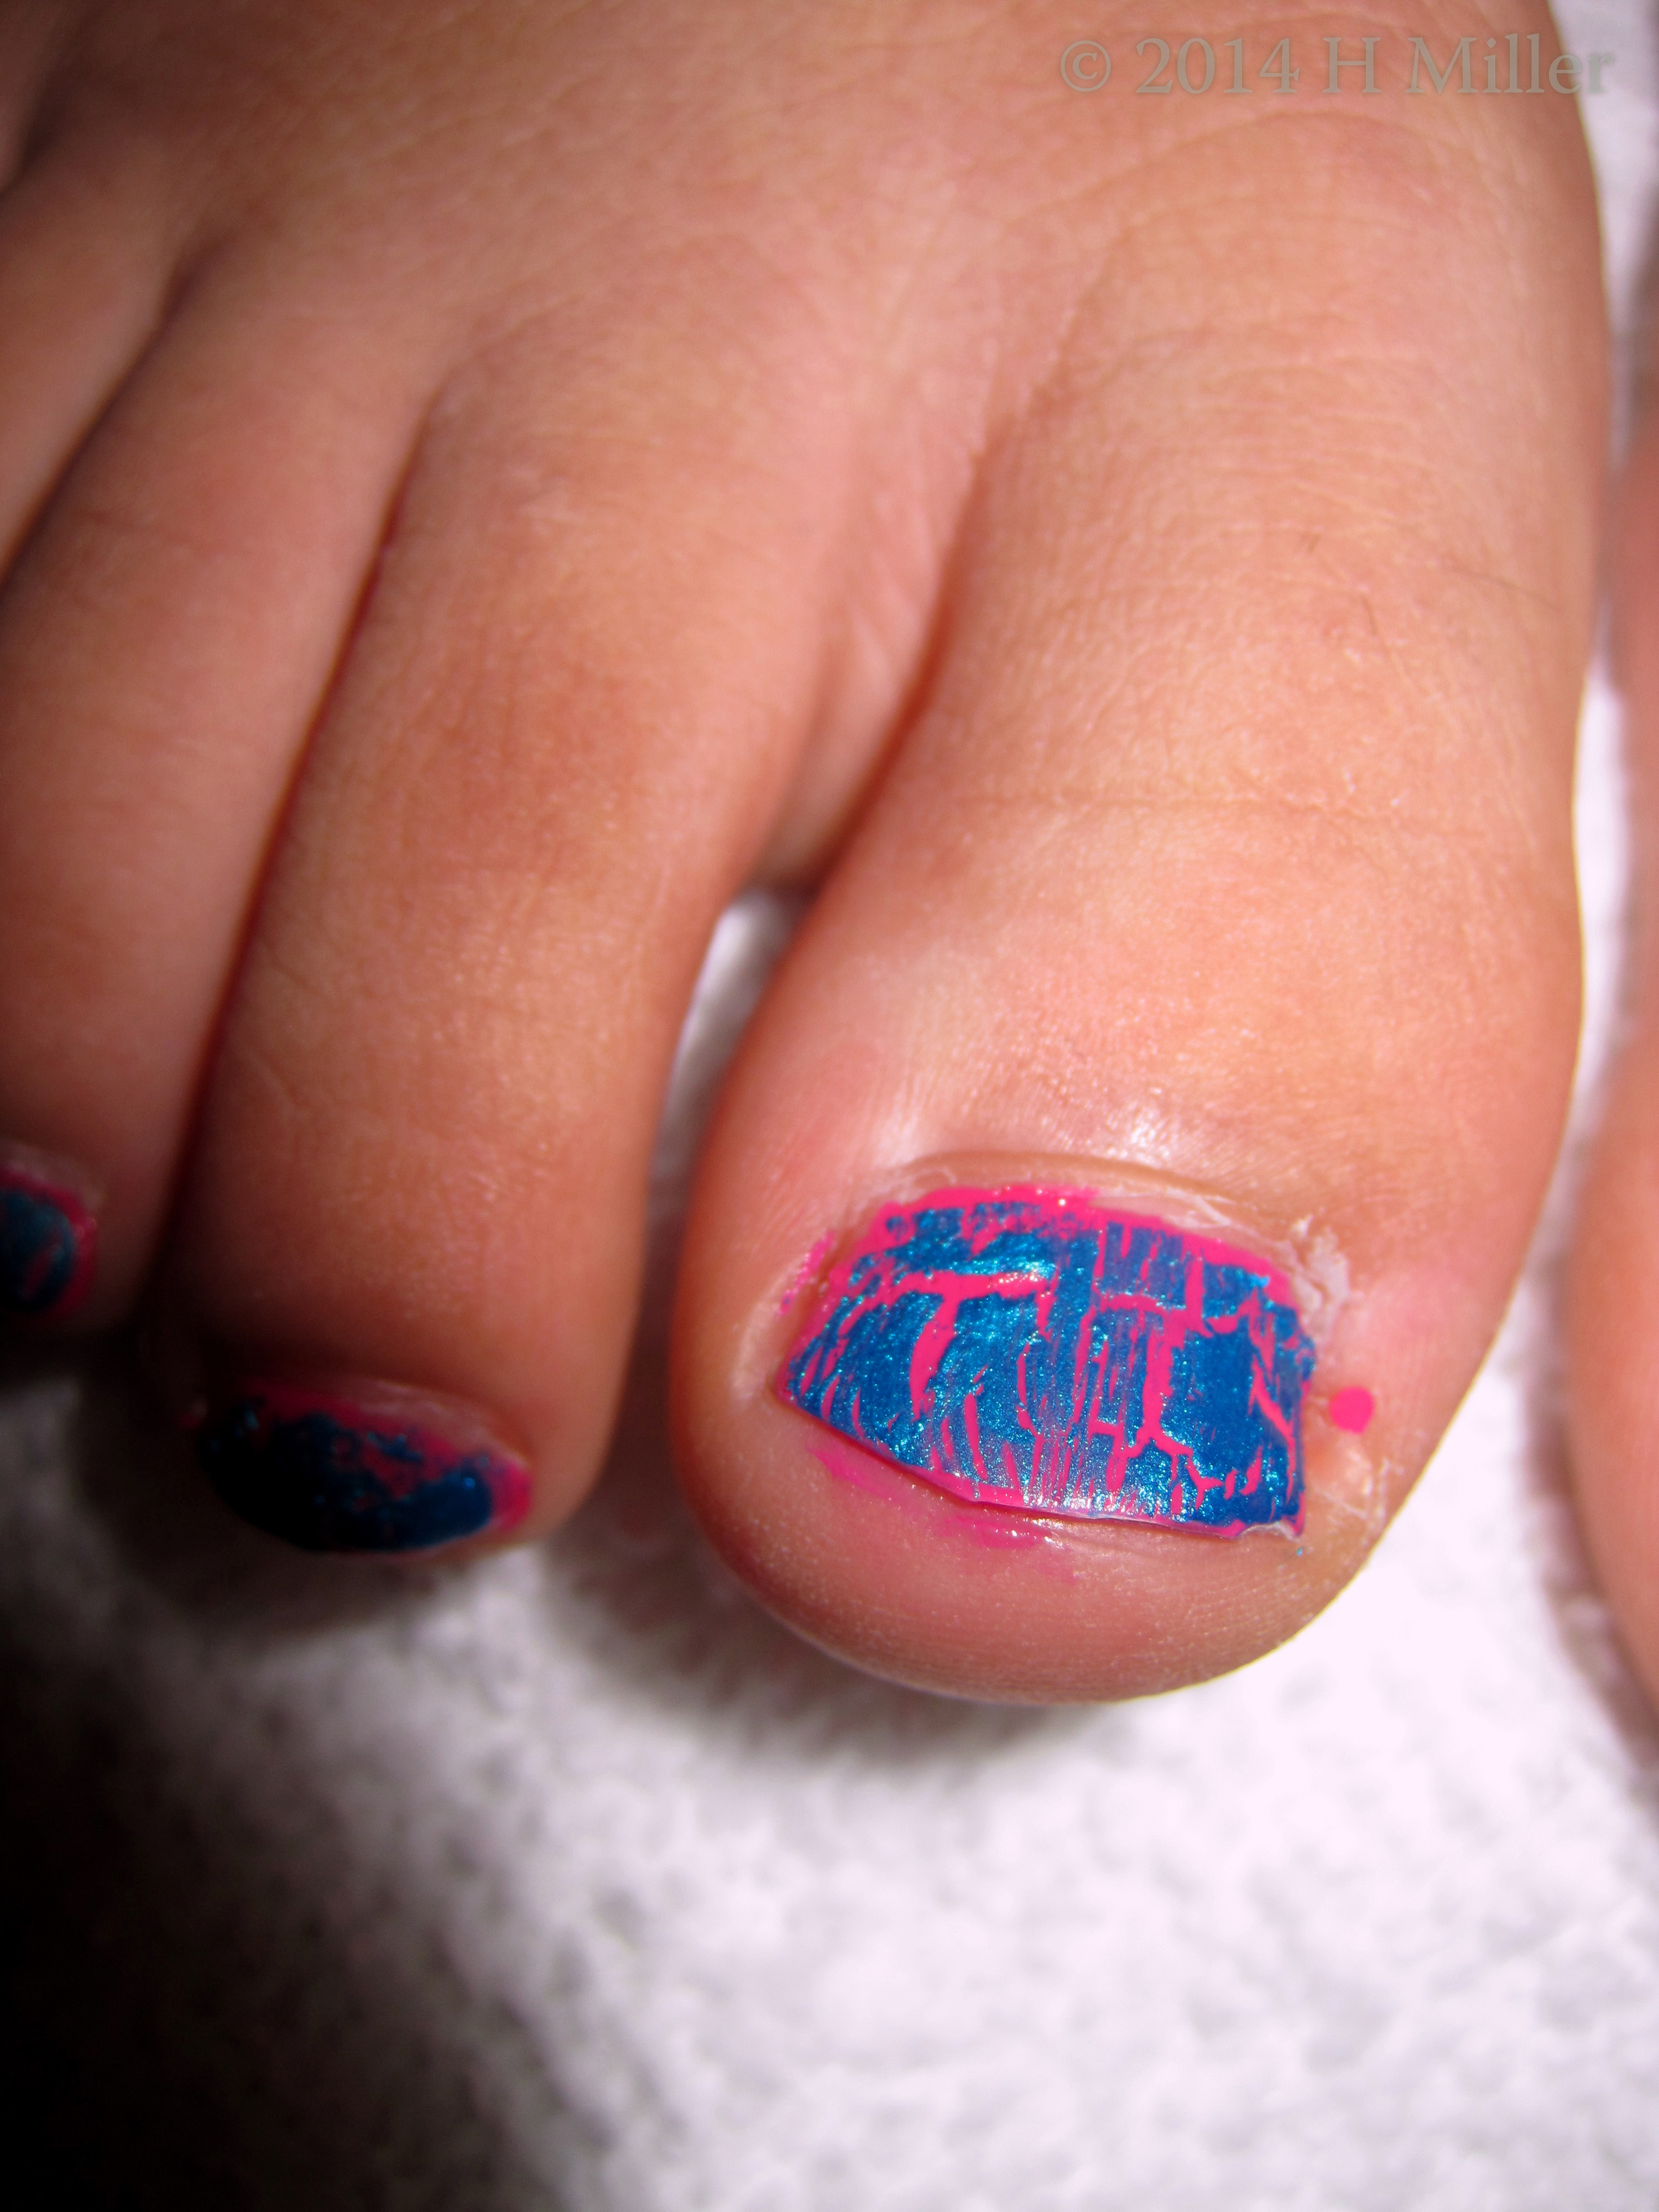 OPI Blue Metallic Shatter On Hot Pink Kids Nail Art 